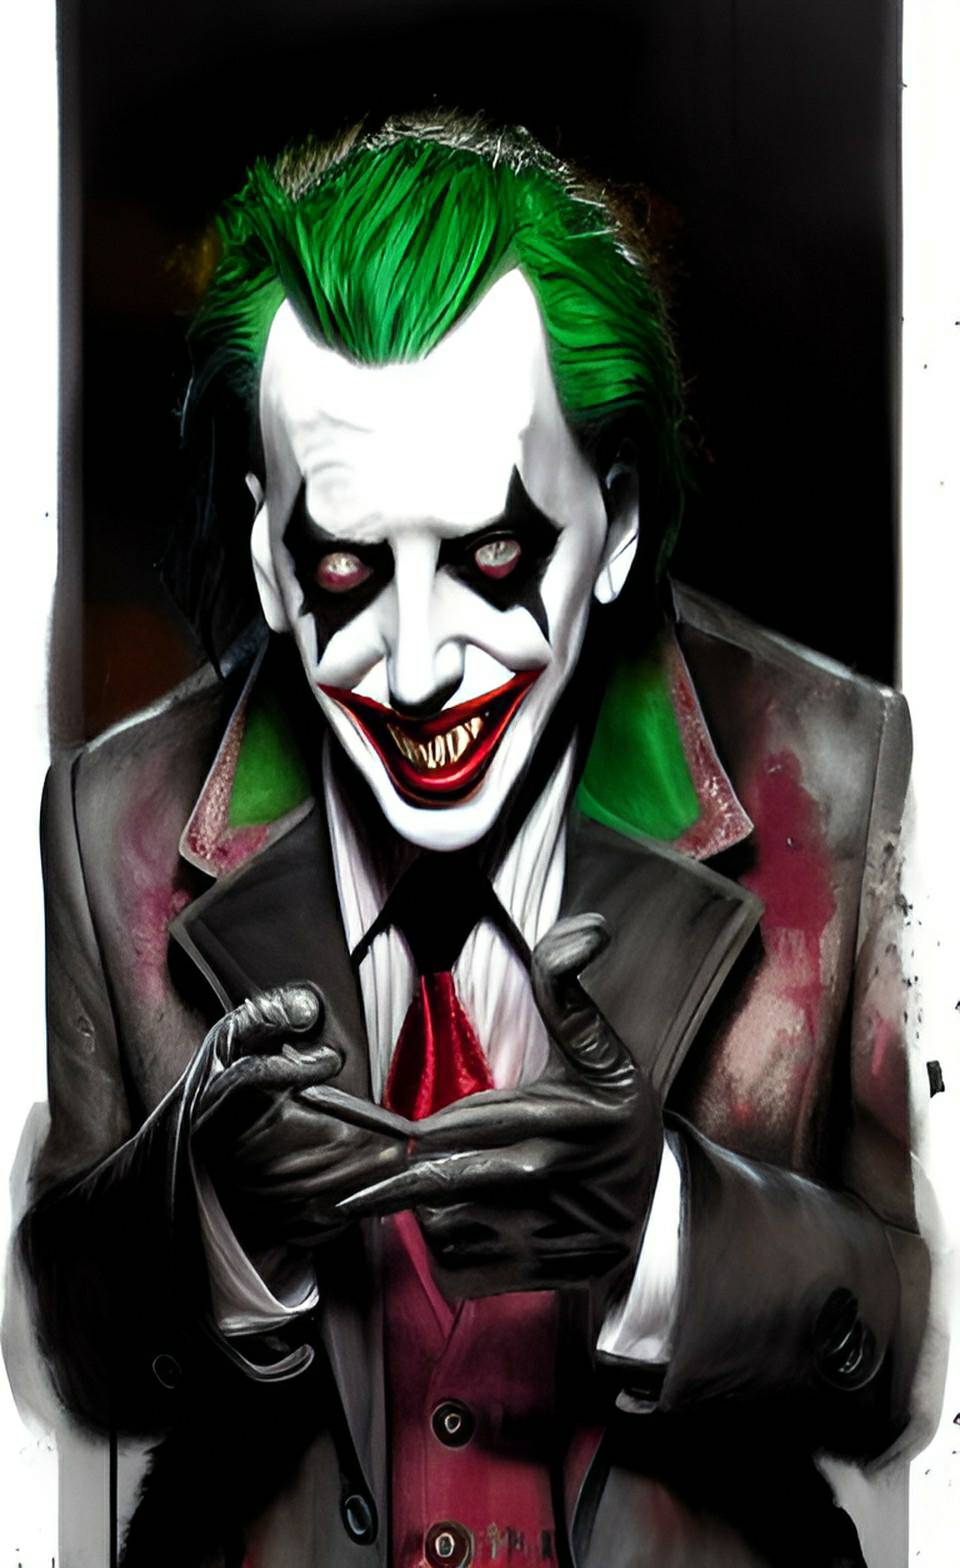 Marilyn Manson as Joker 18 by Walogreen on DeviantArt